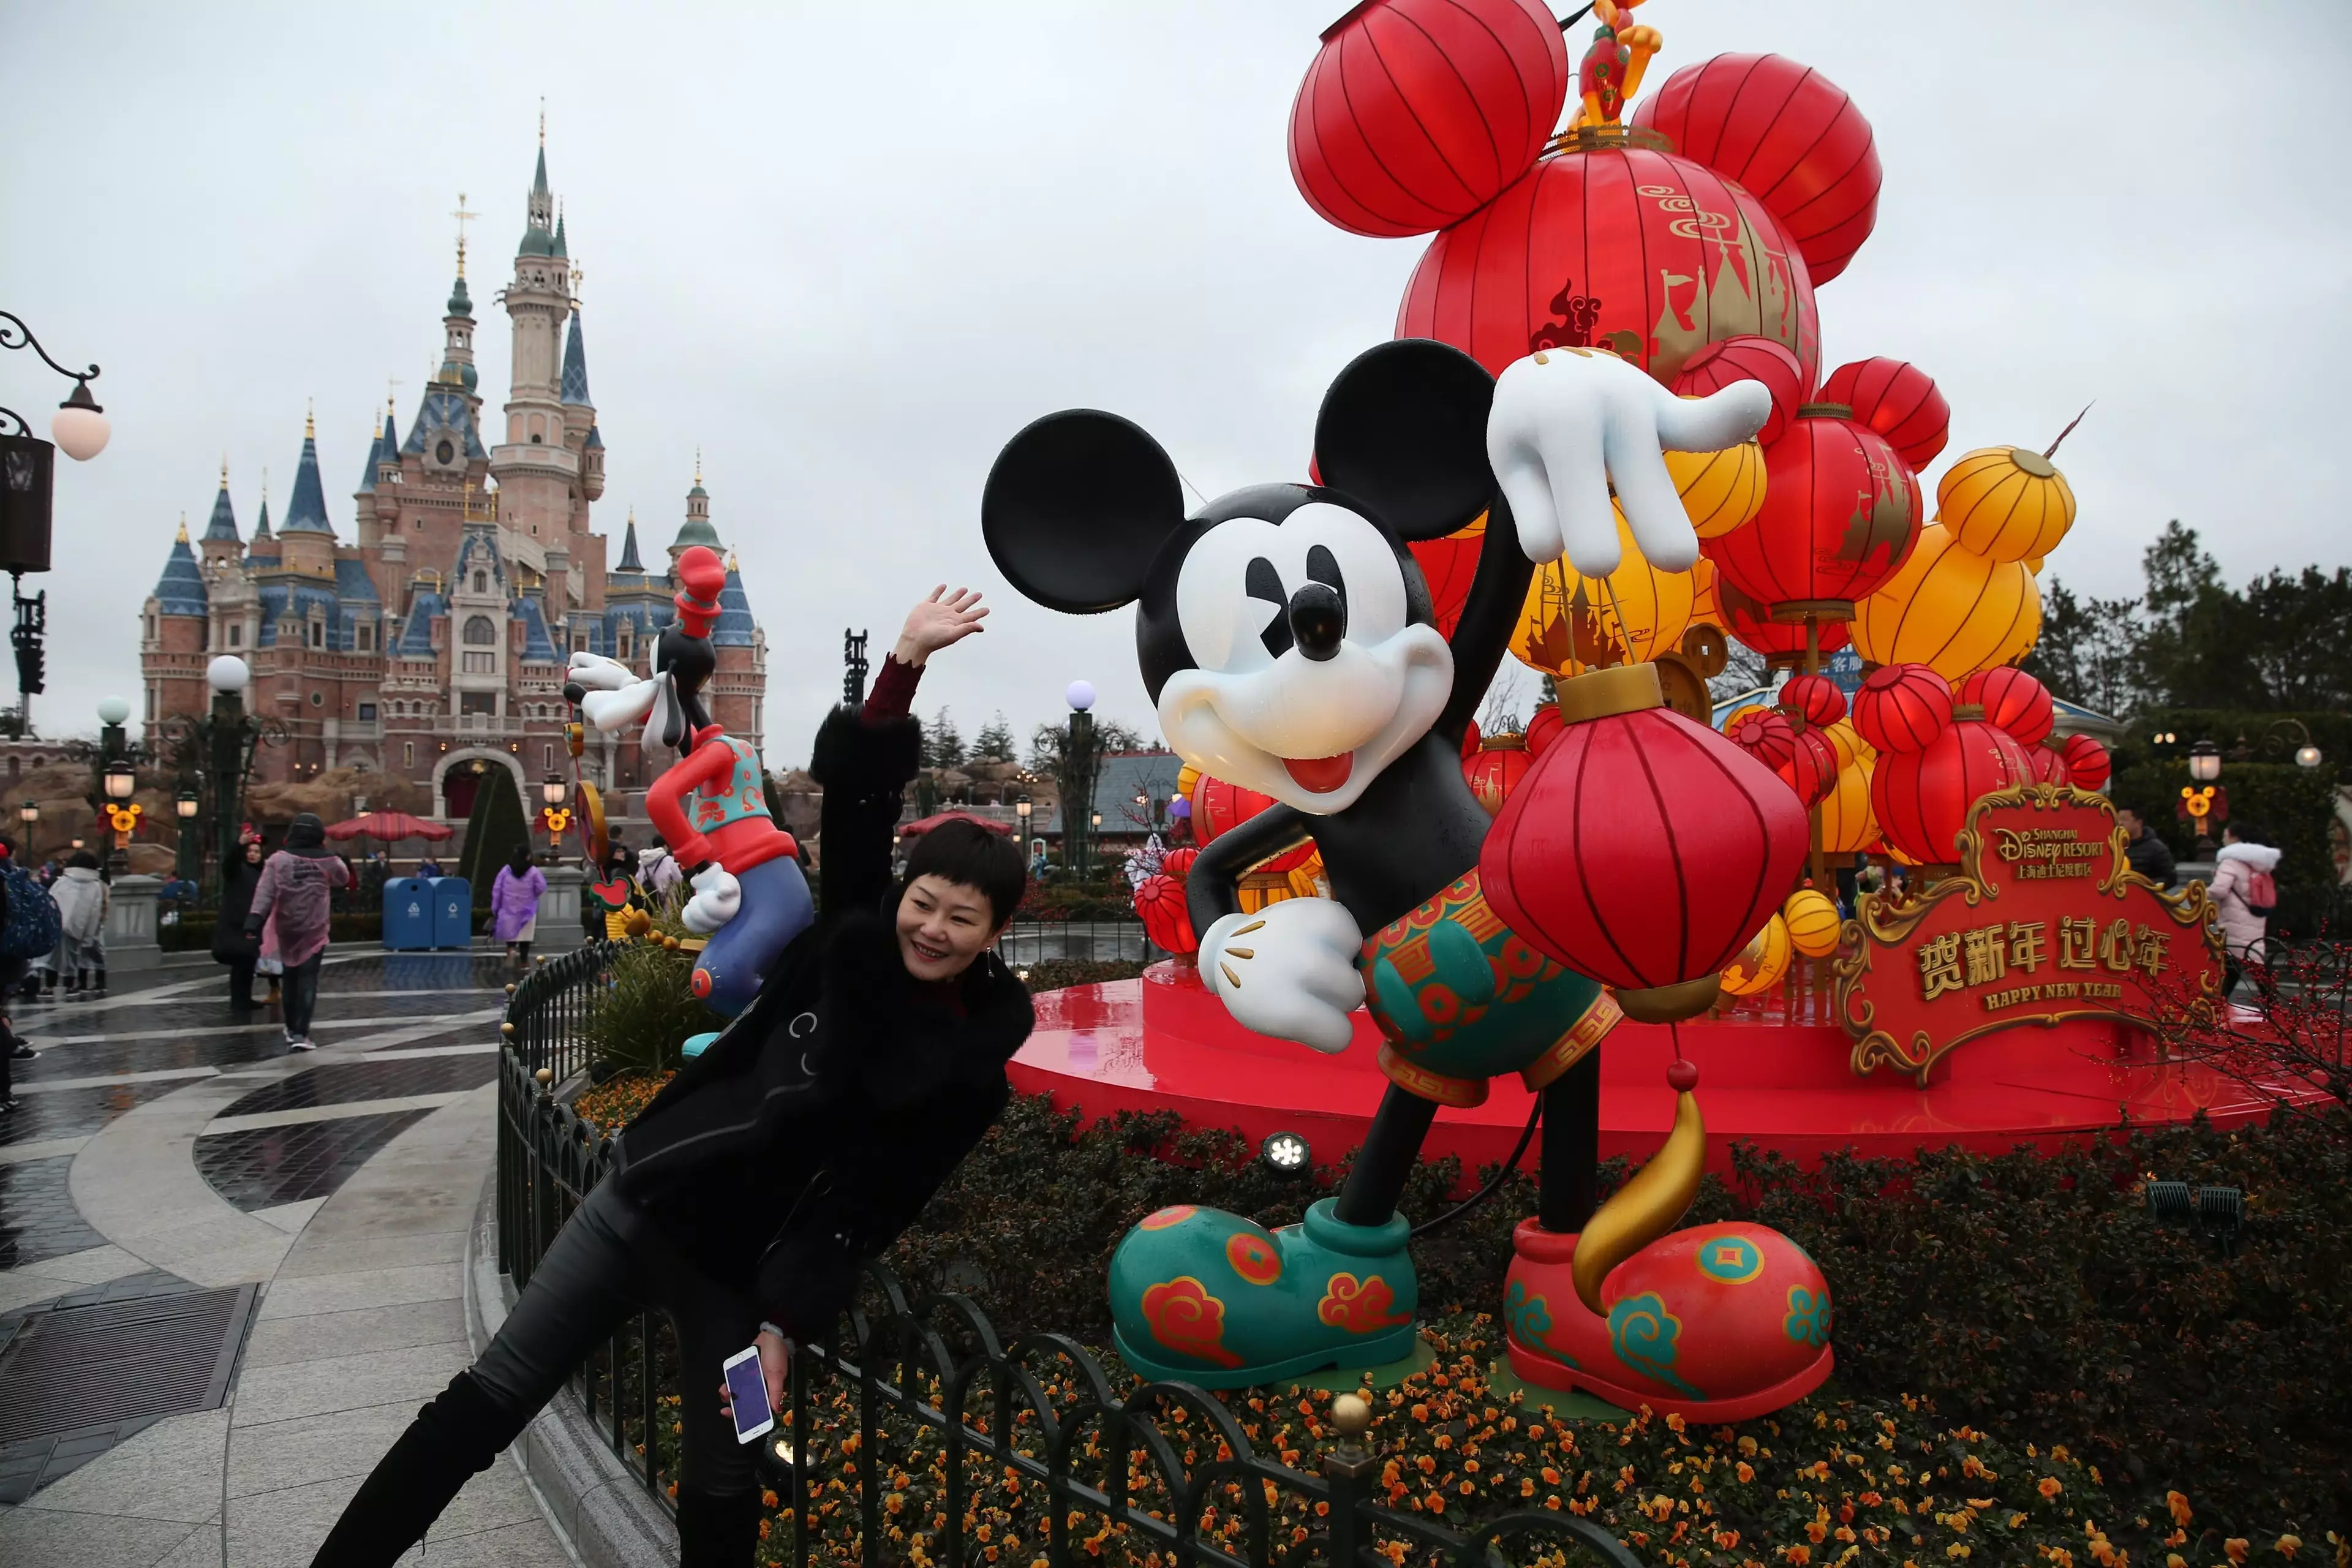 Disneyland in Shanghai is re-opening (